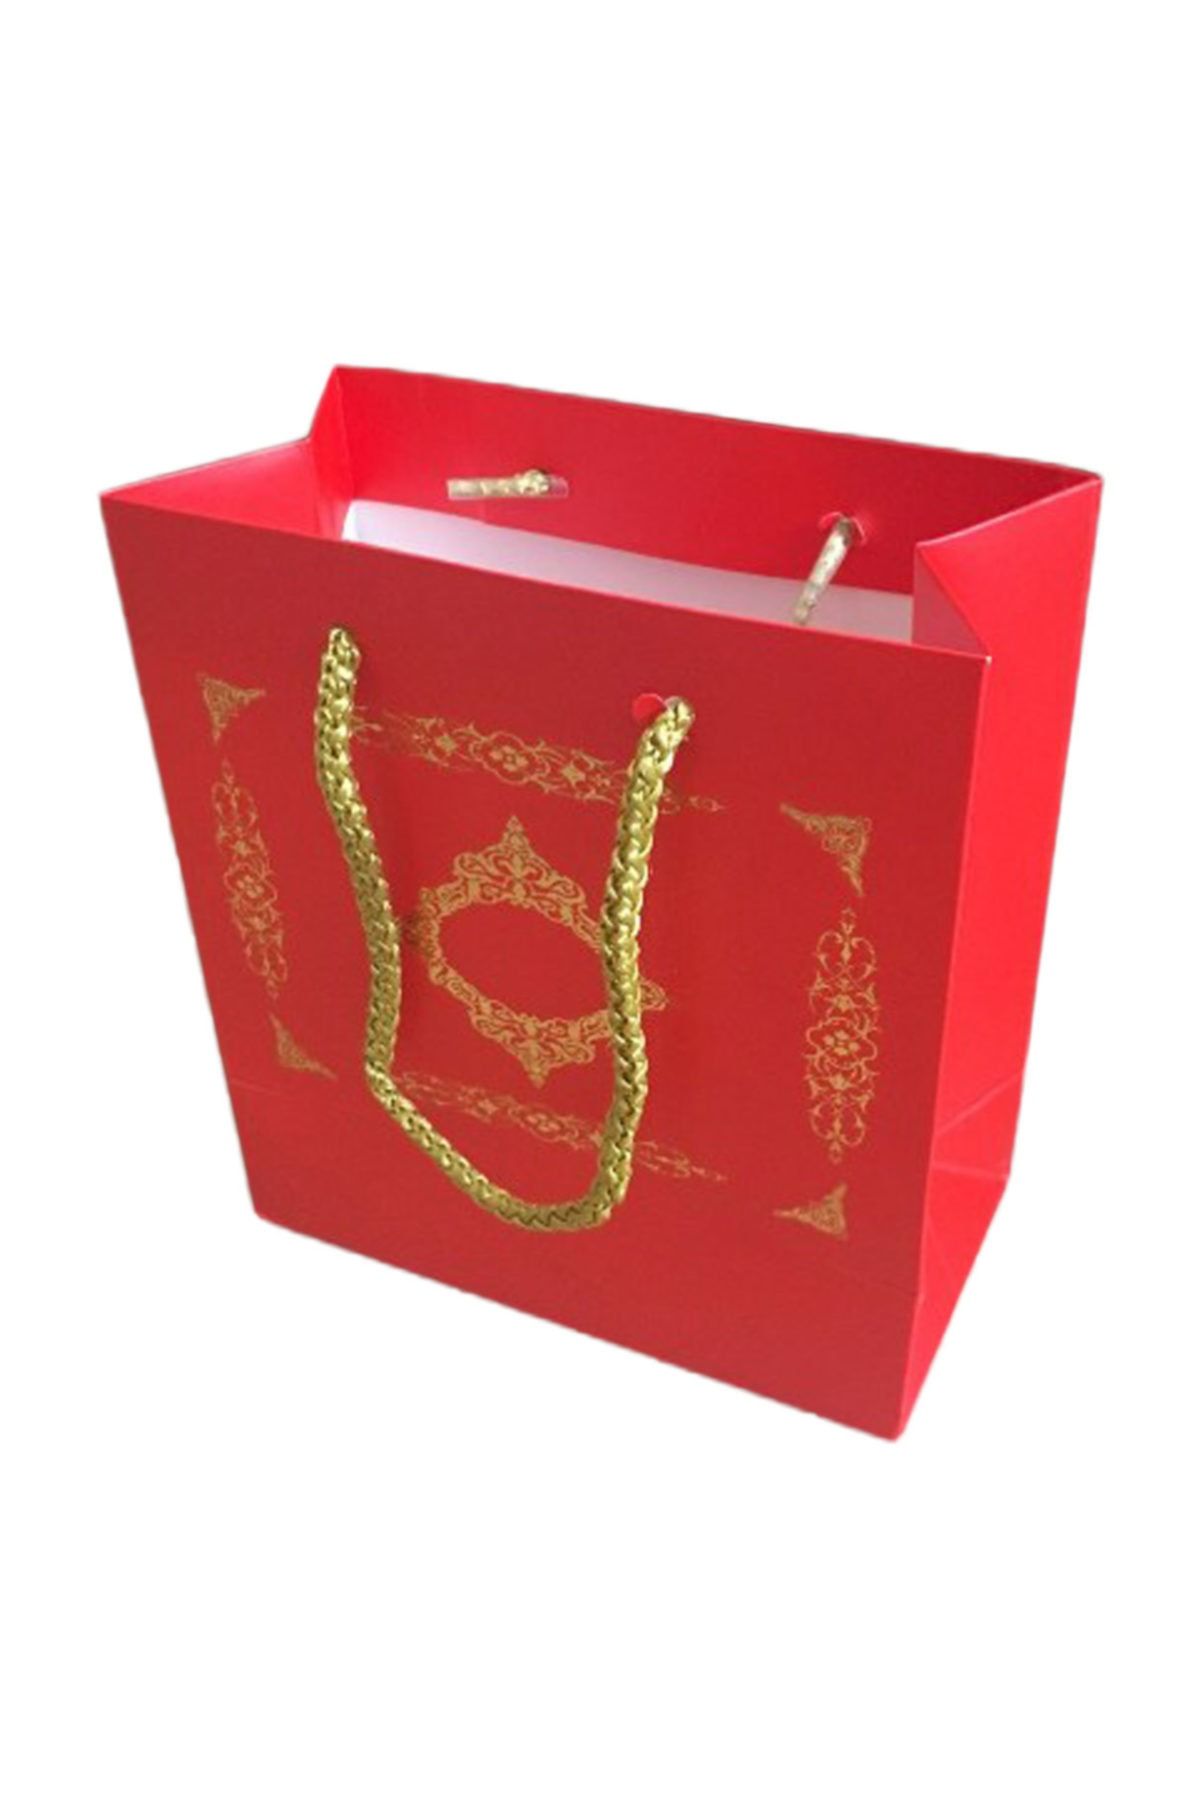 TT Tahtakale Toptancıları Karton Ipsaplı Hediye Çantası Saray Desenli Gold 15x17x8 10 Adet  Kırmızı